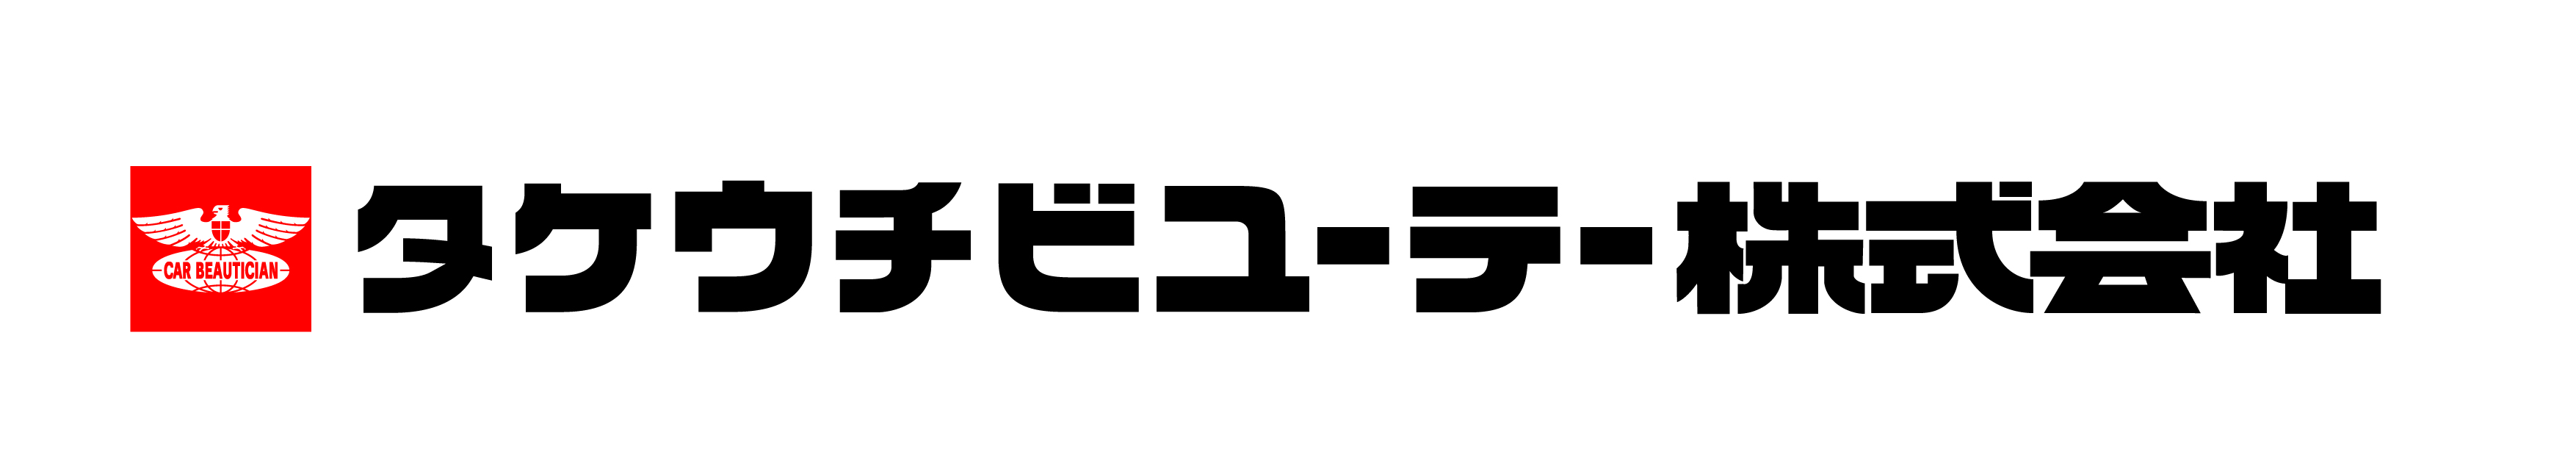 タケウチビユーテー株式会社の企業ロゴ